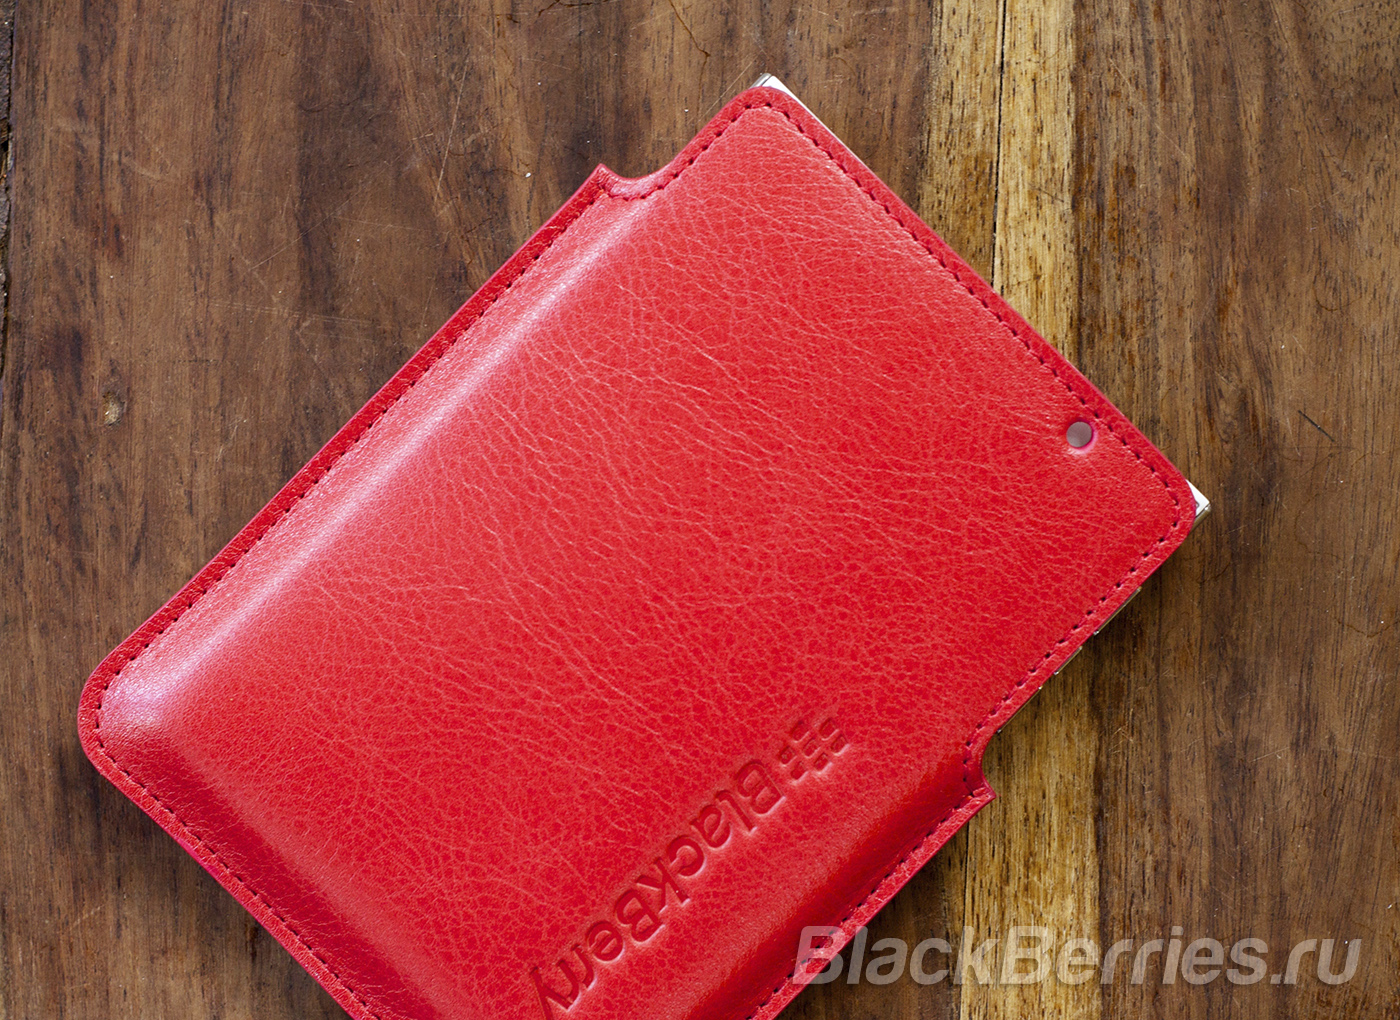 BlackBerry-Passport-Case-21